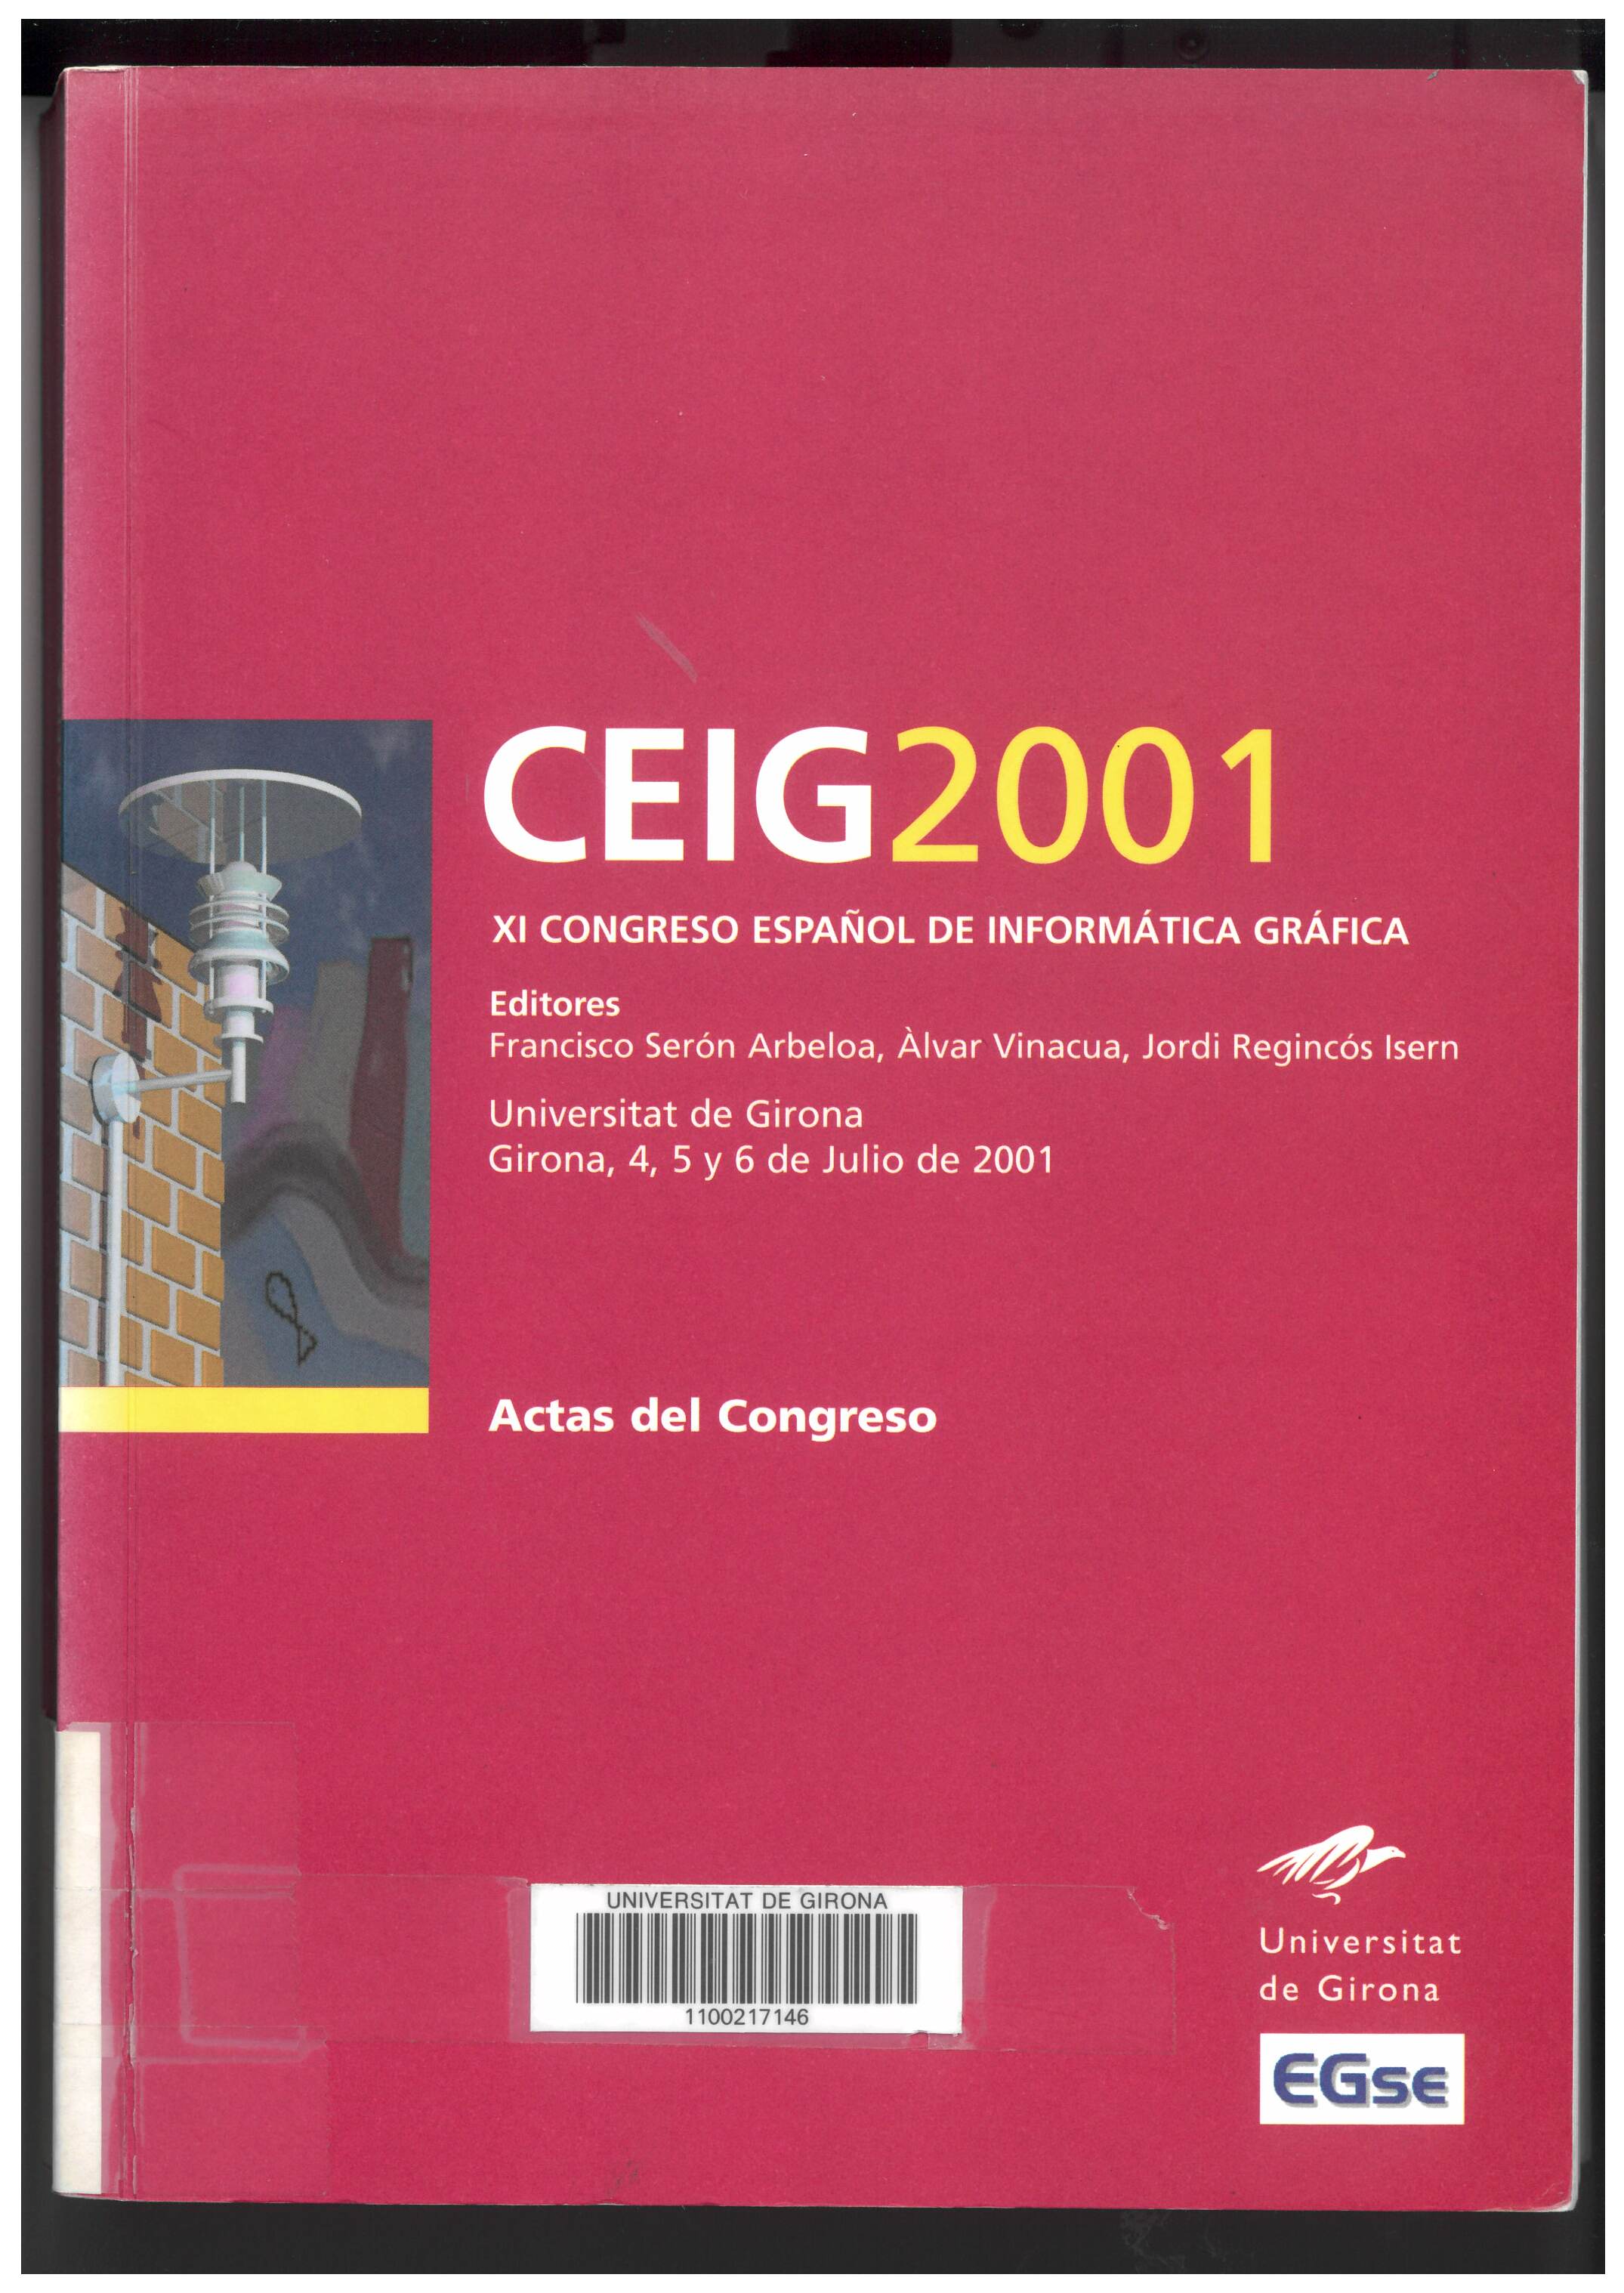 Imagen de portada del libro CEIG 2001